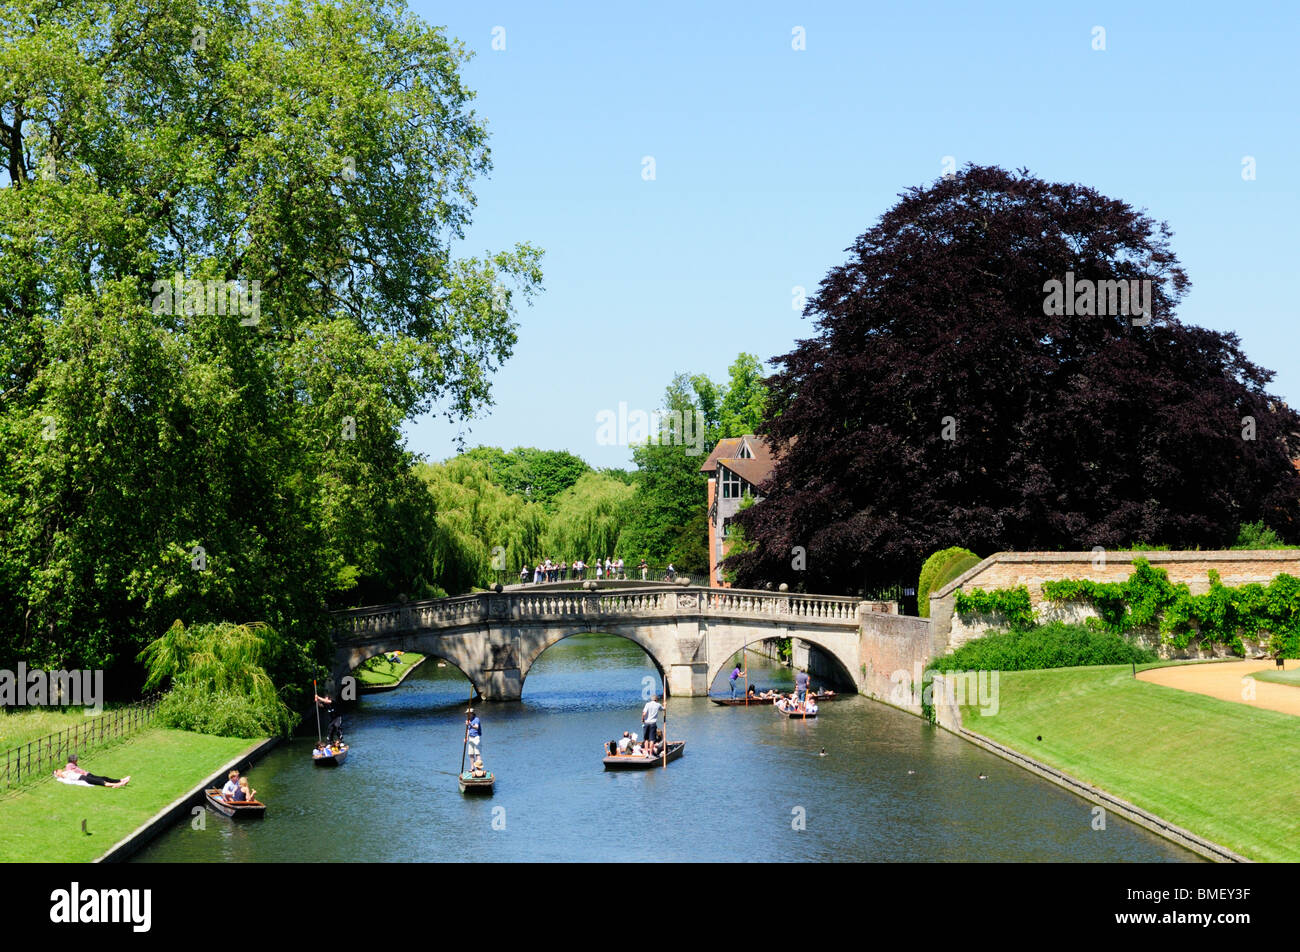 Punting by Clare Bridge, Cambridge, England, UK Stock Photo